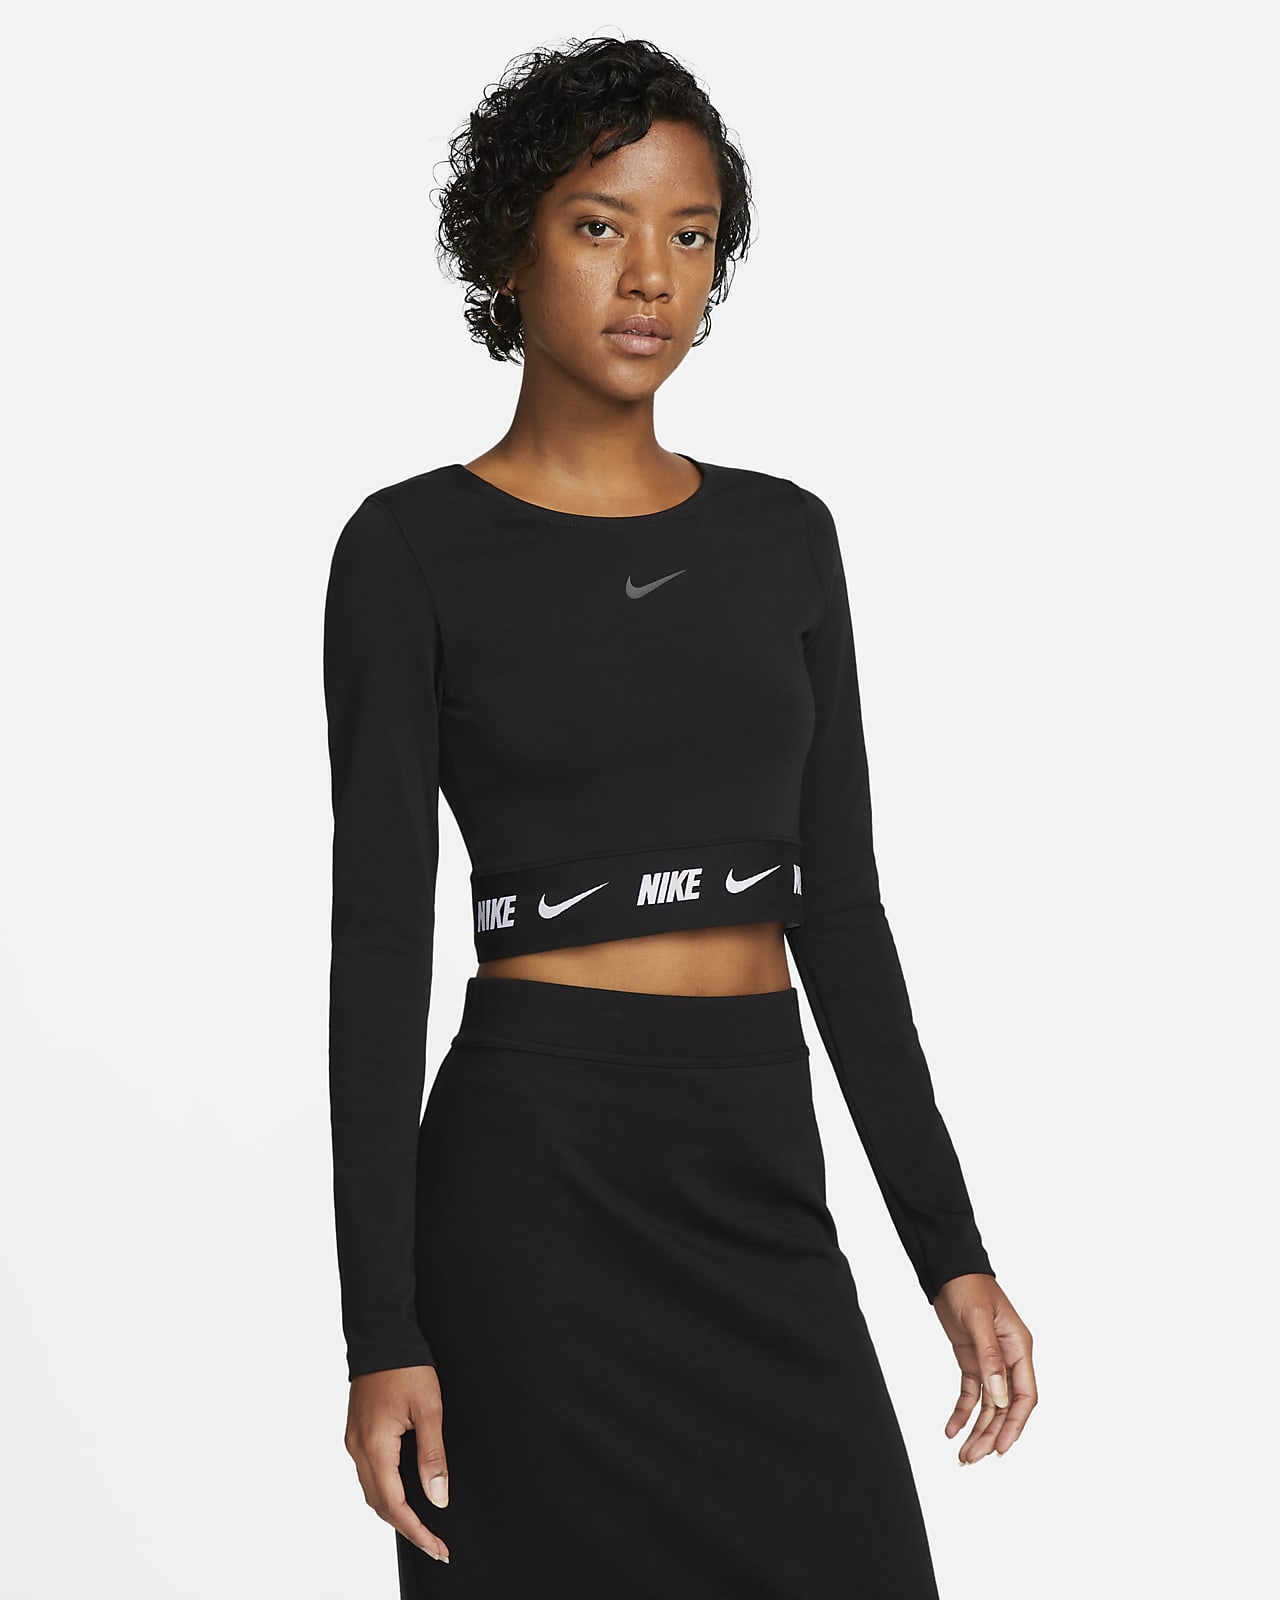 Nike Sportswear Women's Long-Sleeve Crop Top